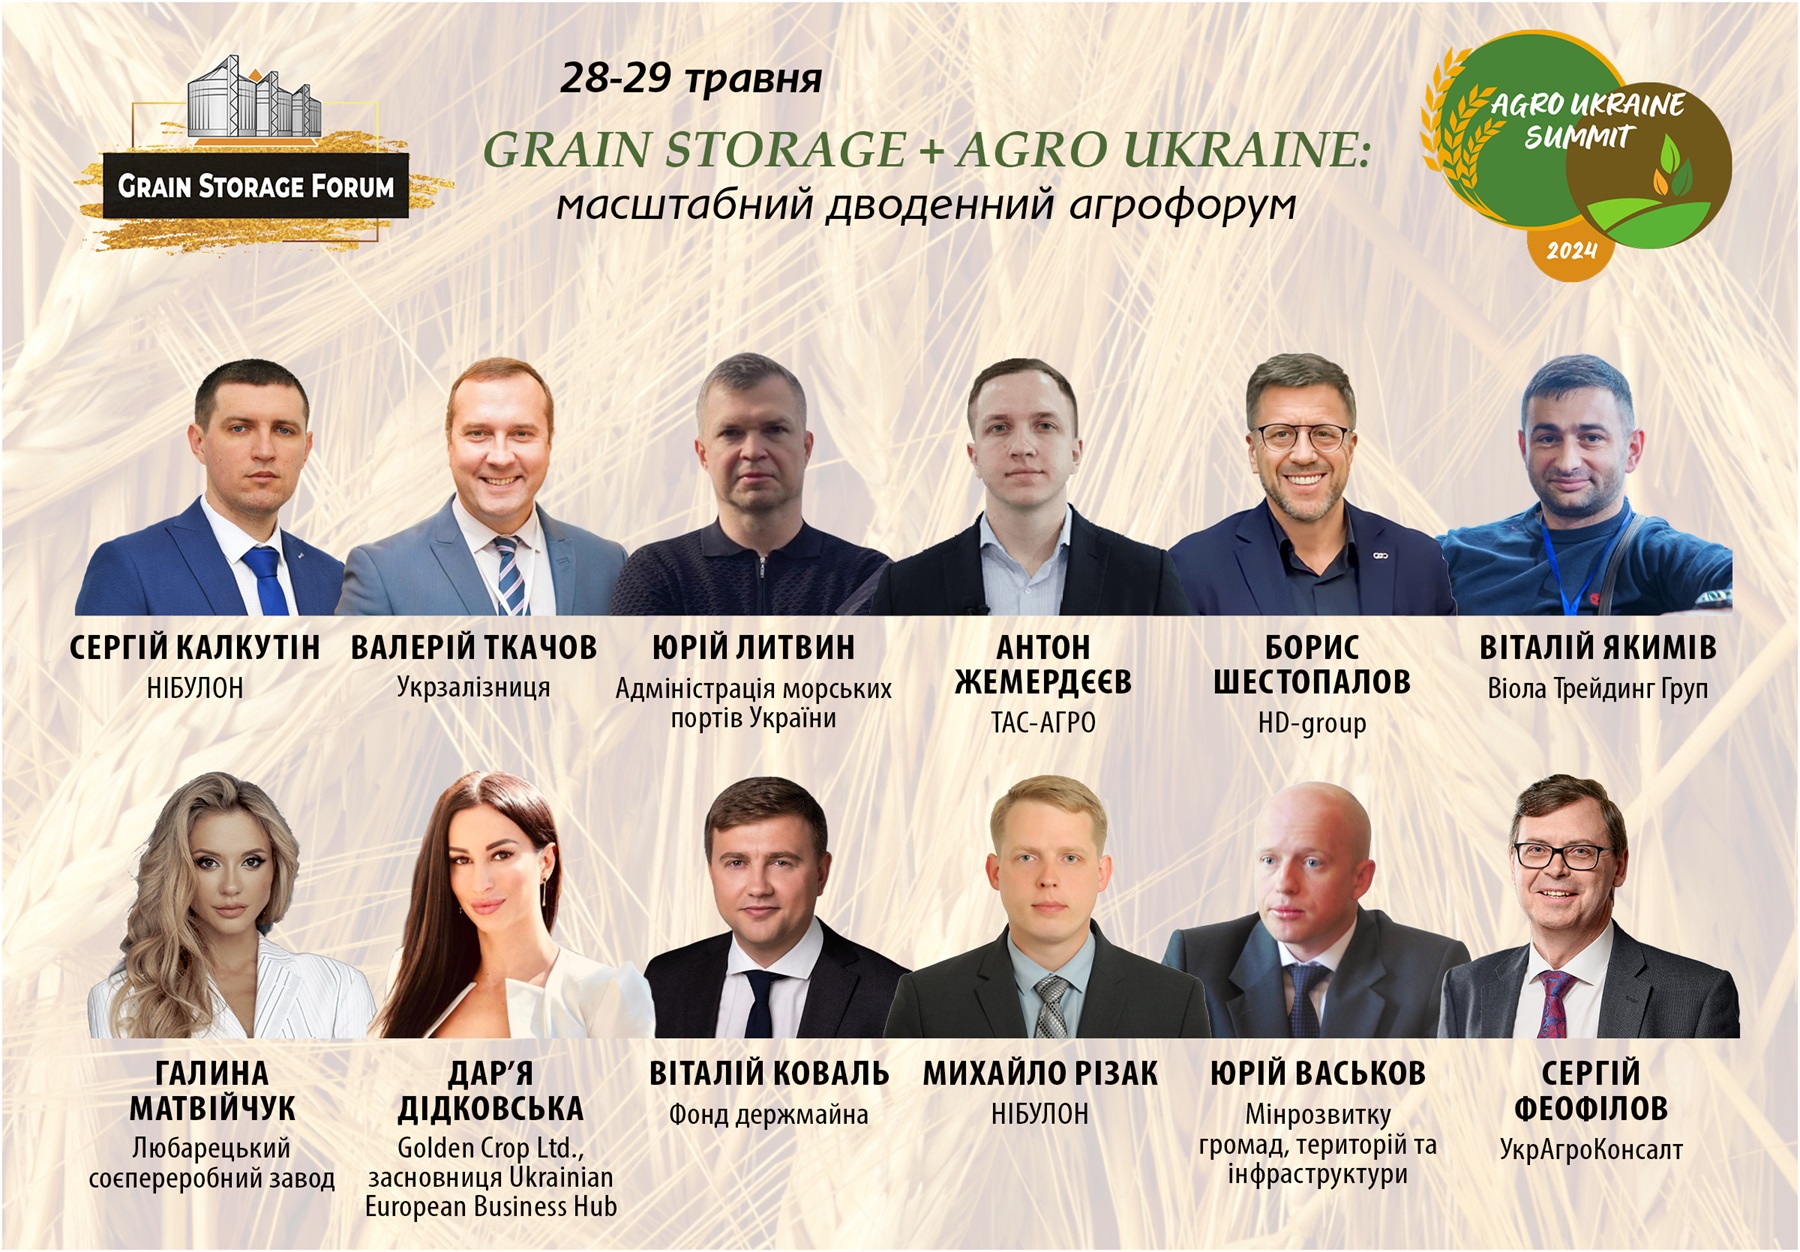 Grain Storage Forum 2024: організатори оголосили перших спікерів